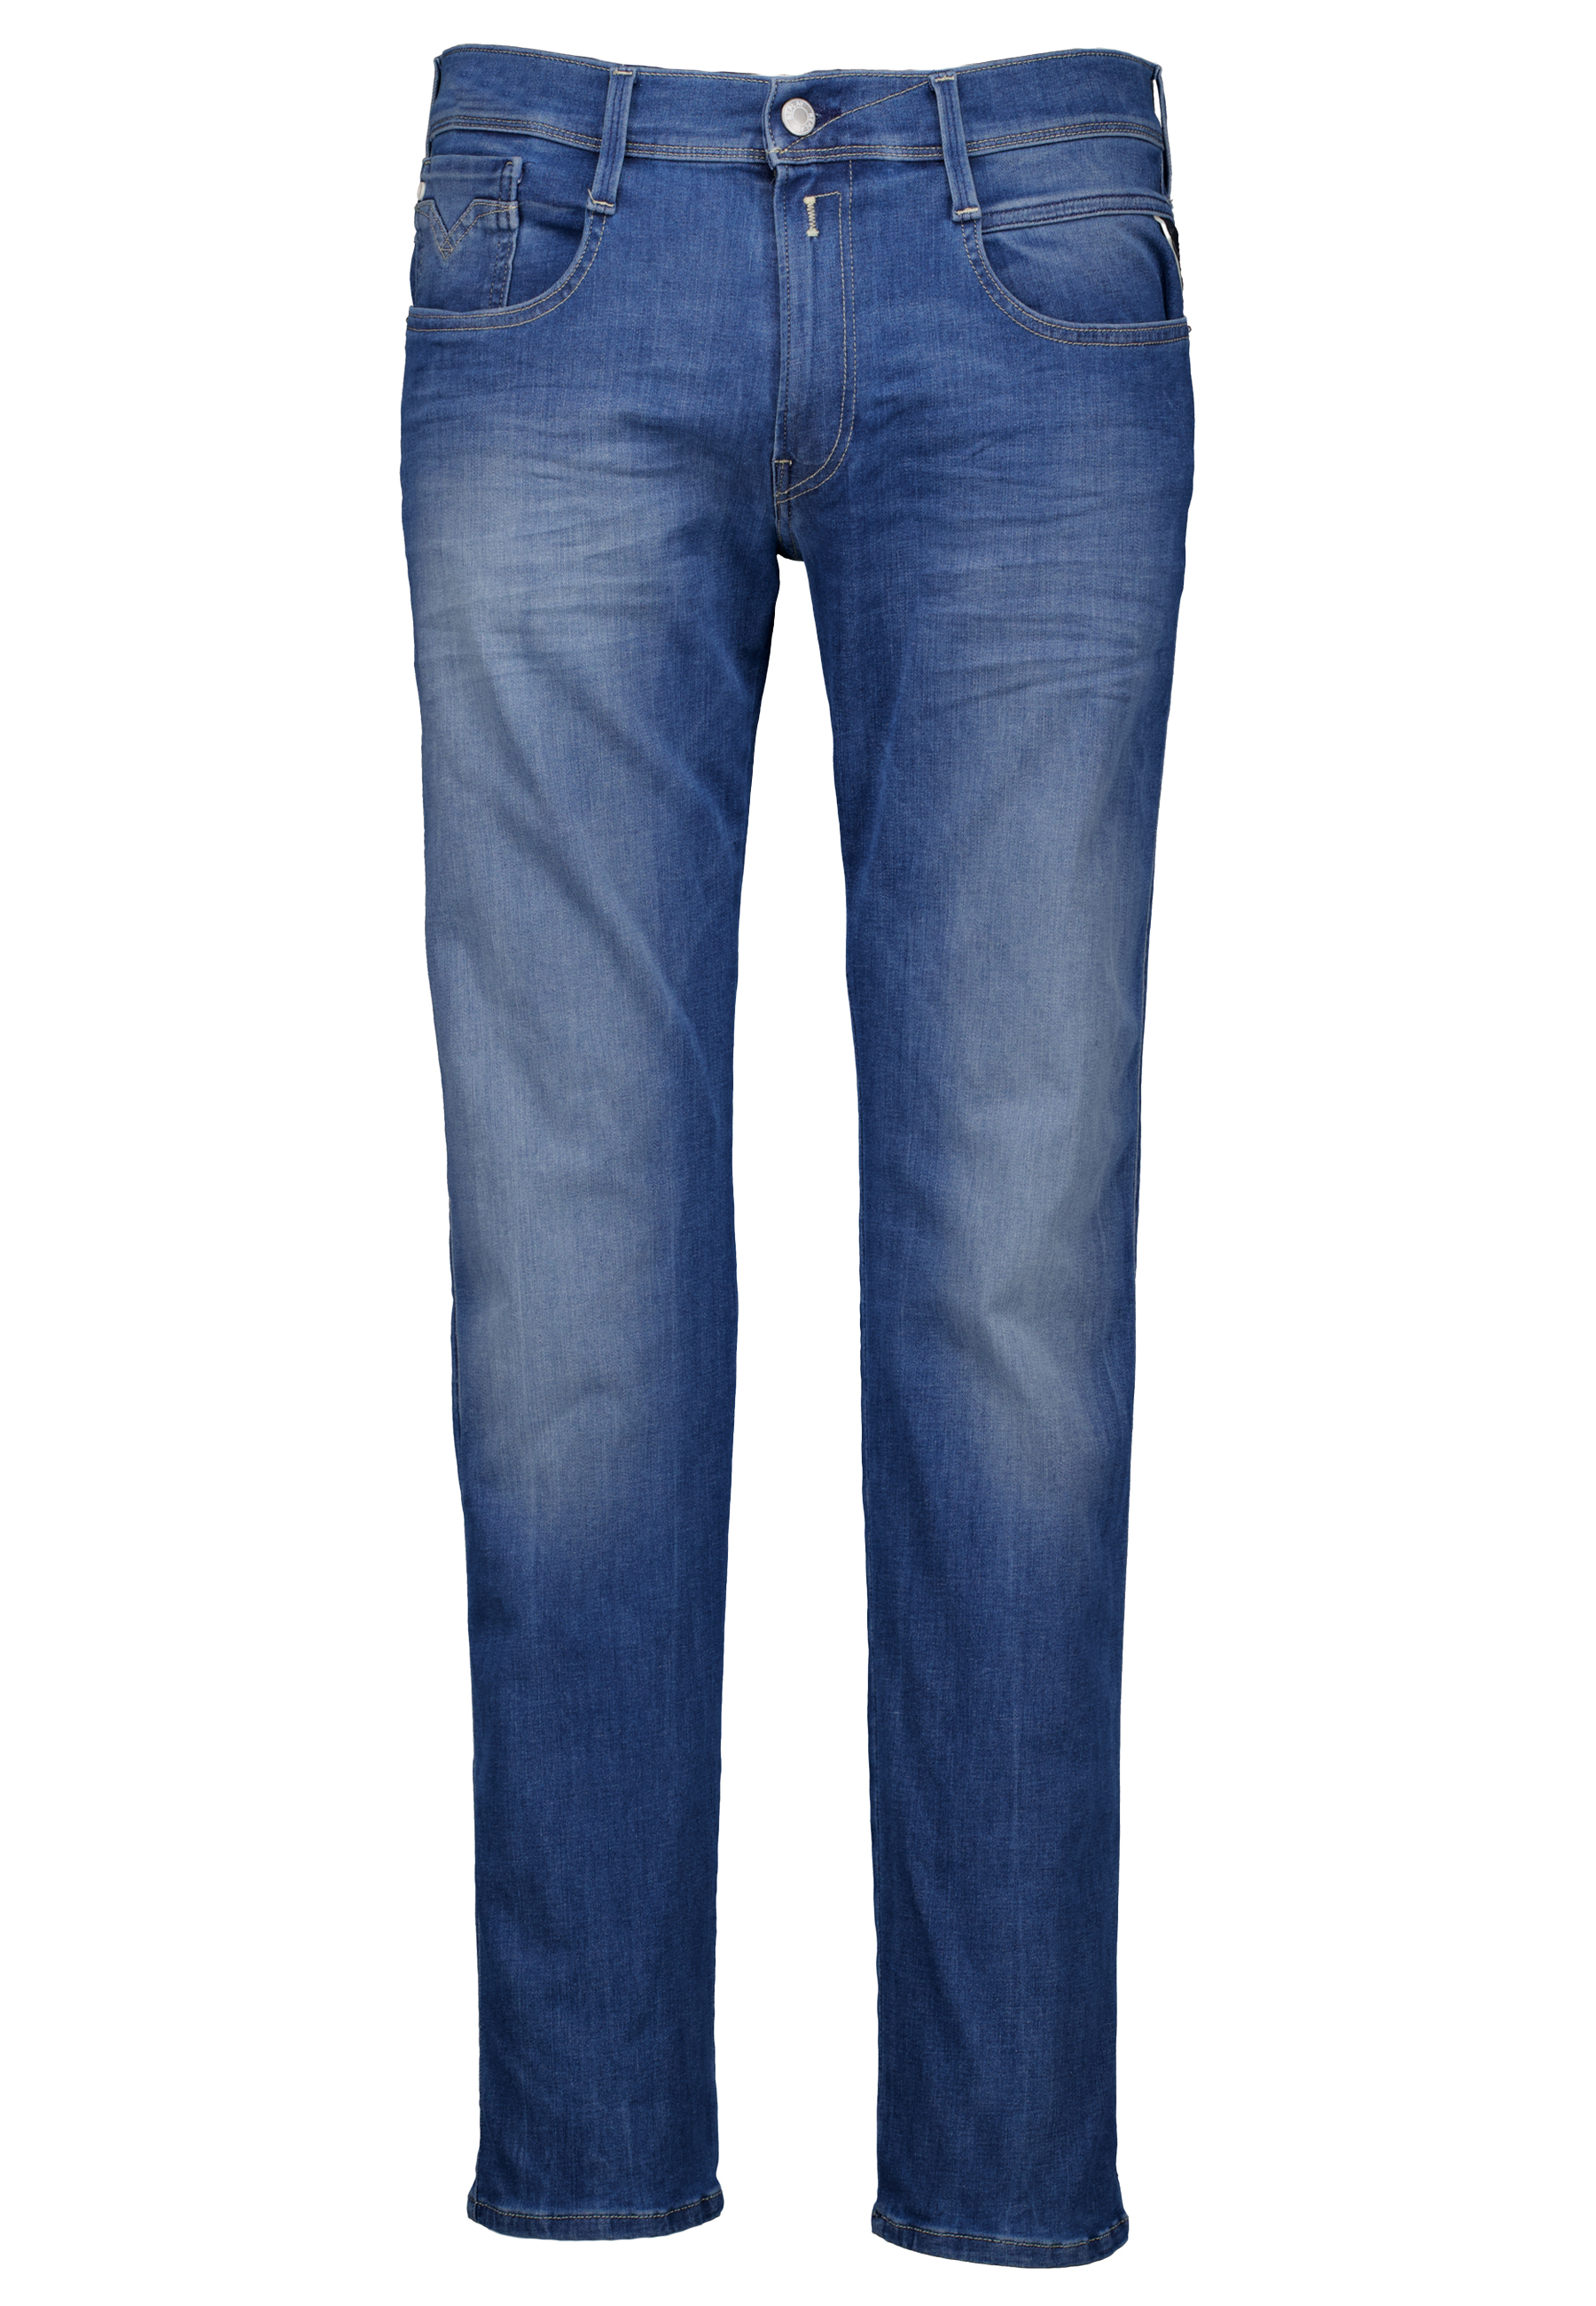 Replay Heren Jeans Blauw maat 36/32